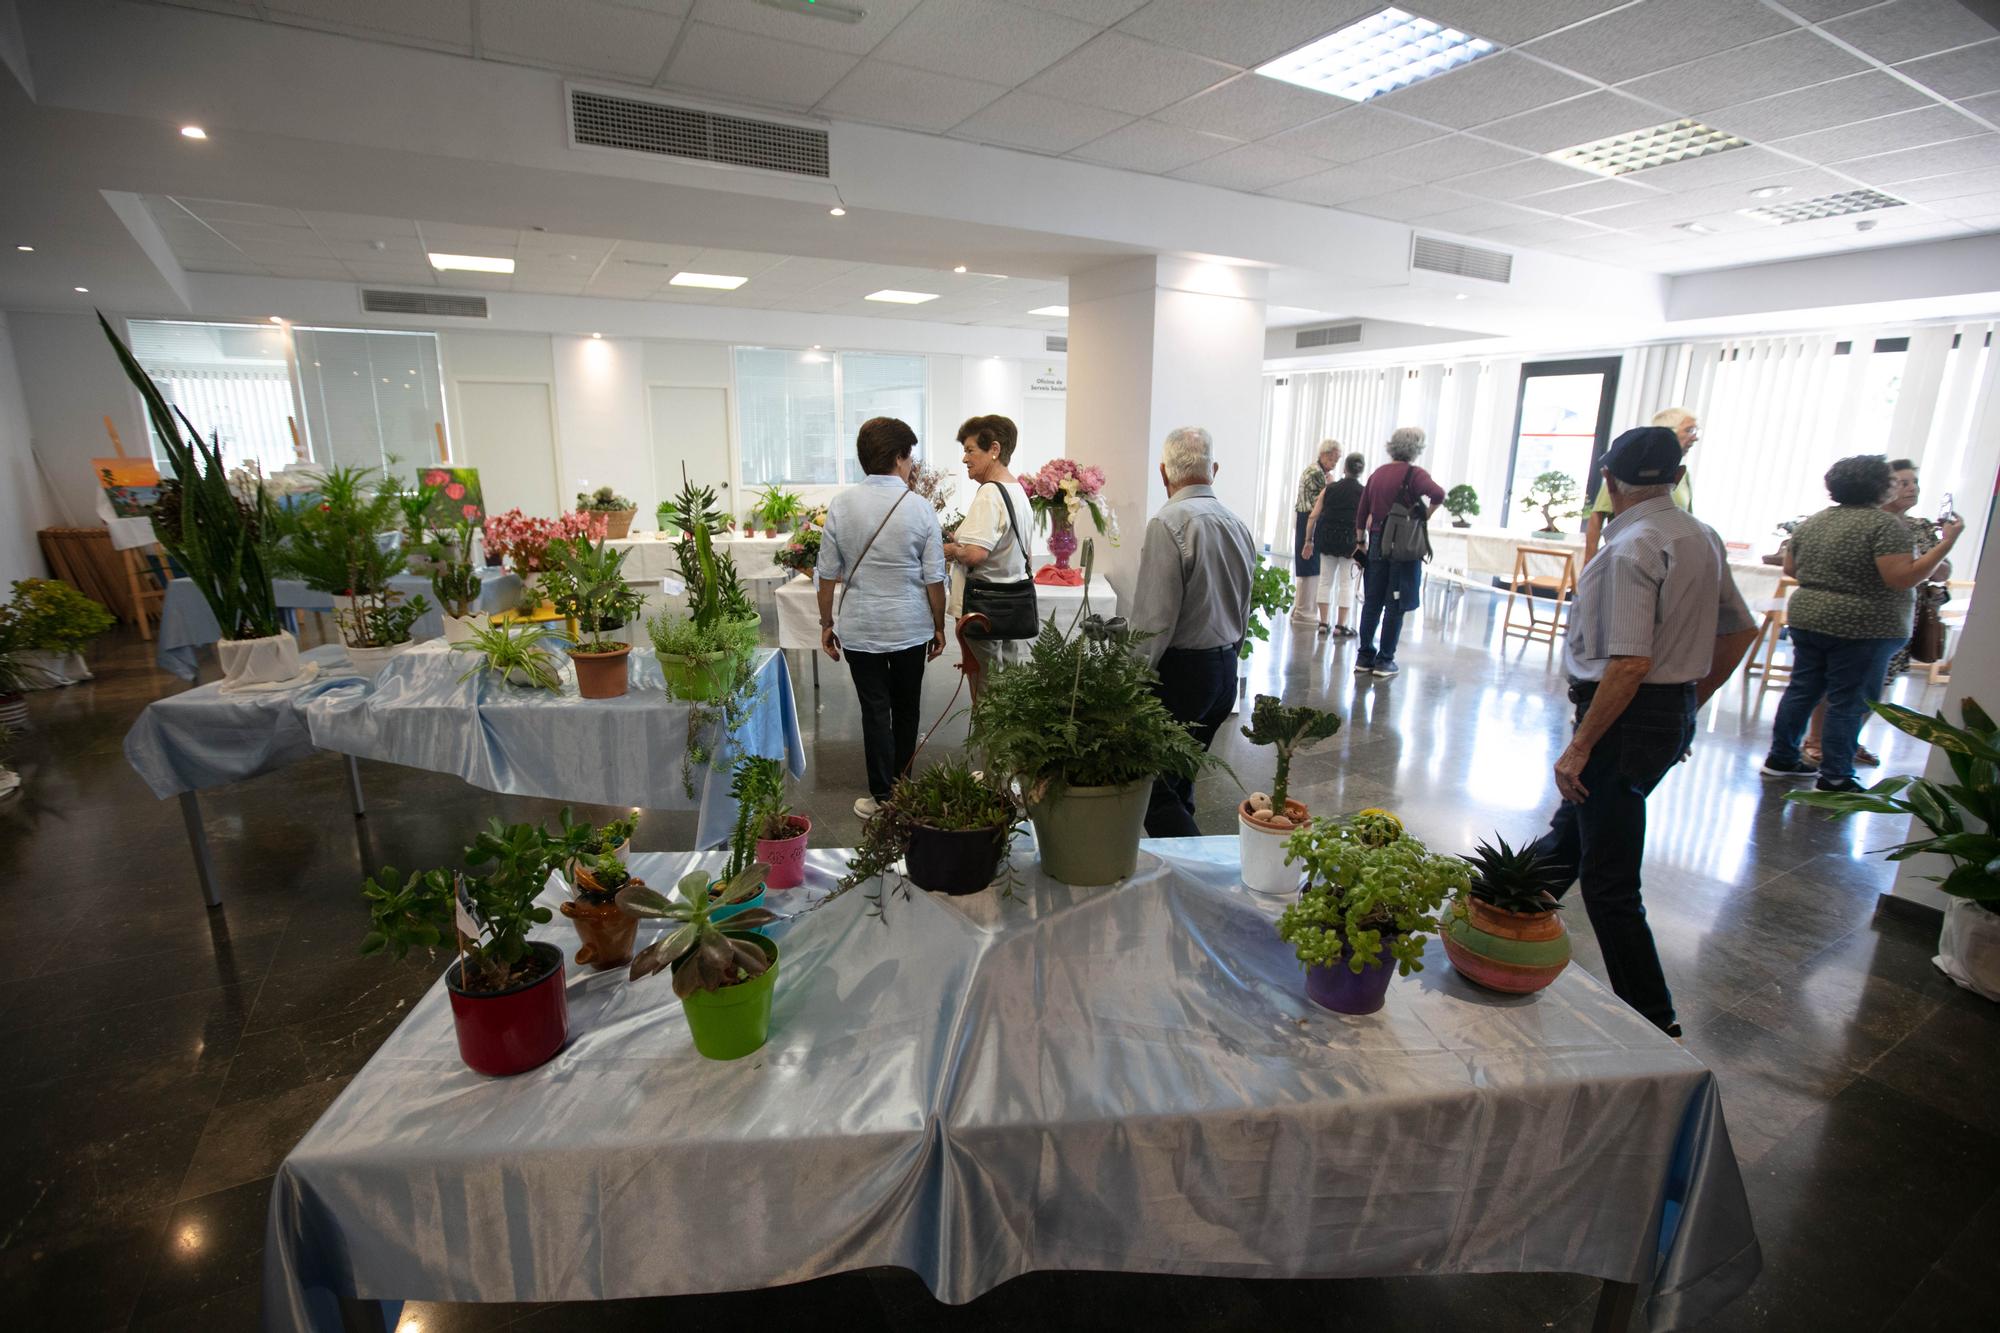 Exposición de plantas y mucha tradición en Puig d'en Valls